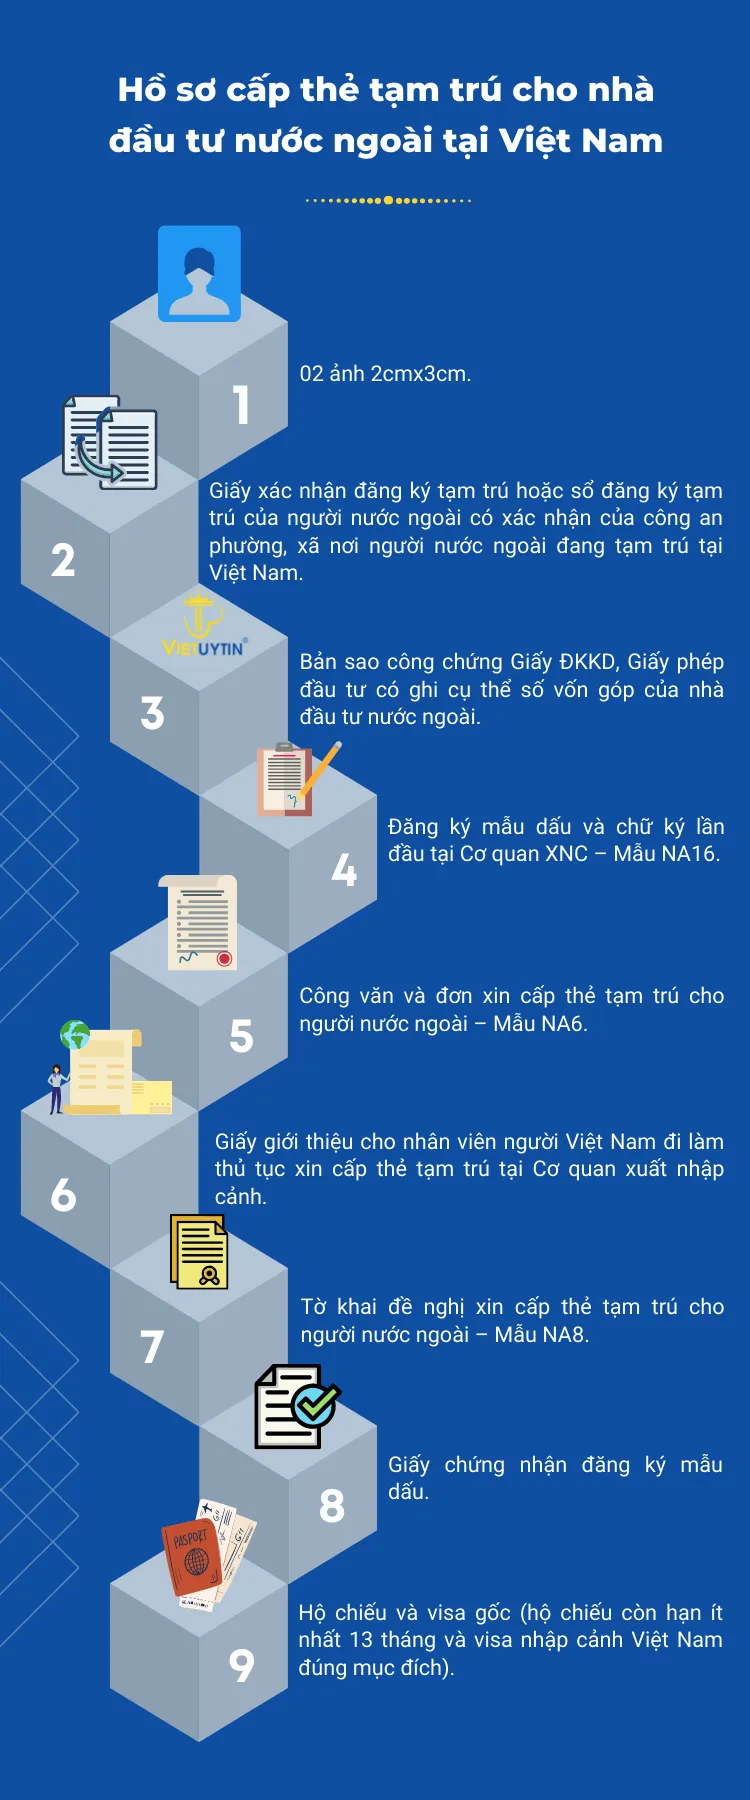 Hồ sơ cấp thẻ tạm trú cho nhà đầu tư nước ngoài tại Việt Nam